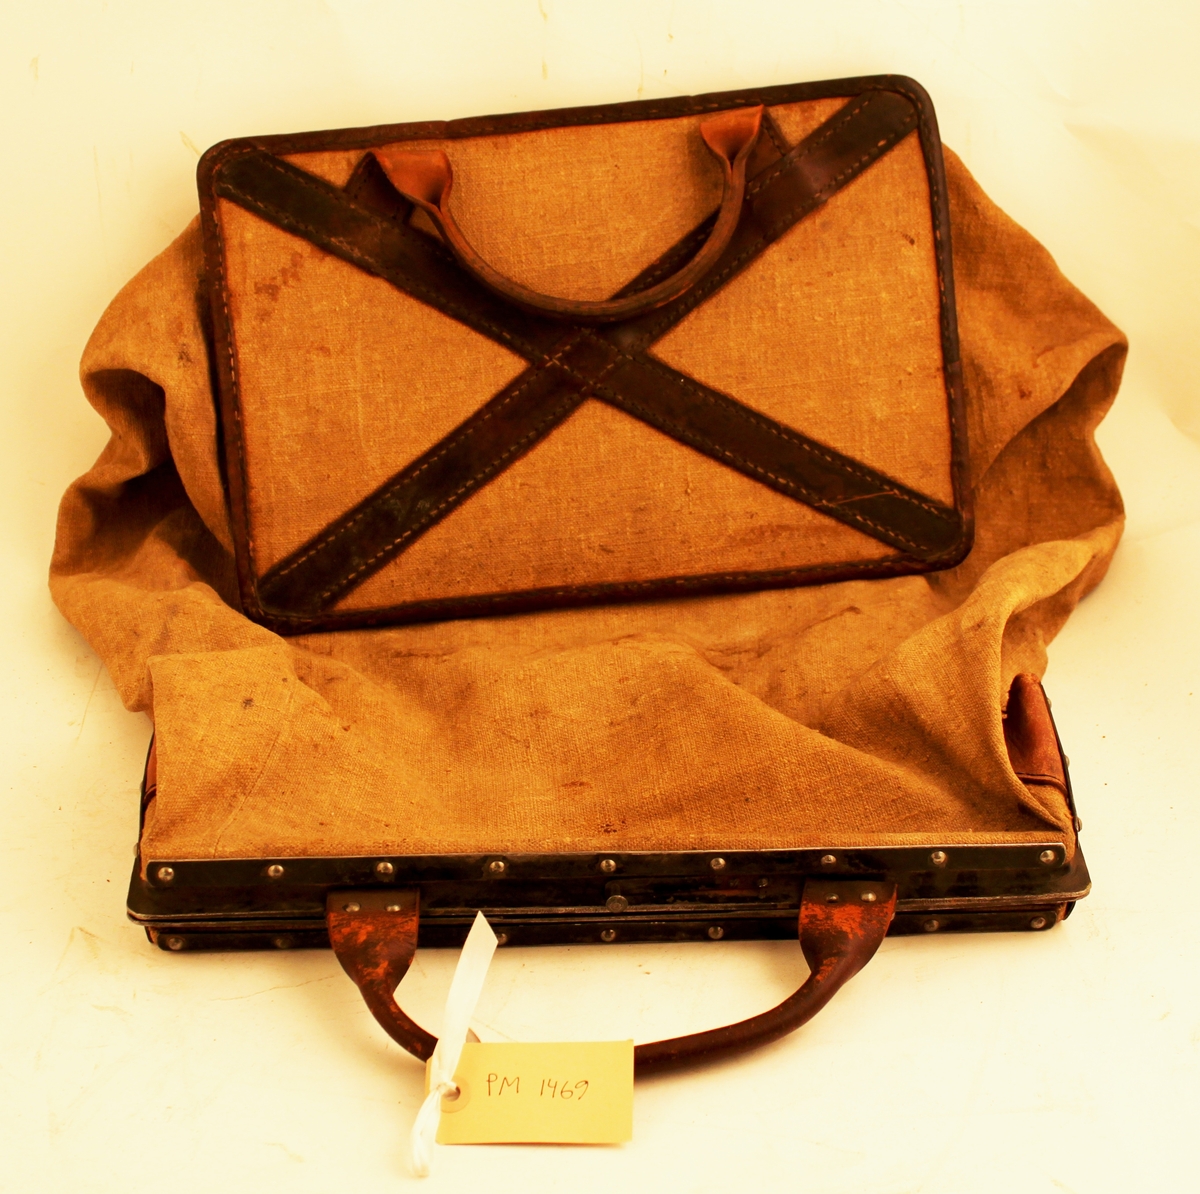 Tömningsväska av säckväv med järnram till mekanisk brevlåda. Väskan är fästad vid den rektangulära järnramen. Järnramen är försedd med gångjärn, så den kunde vikas ihop och förslutas med en låshake. Ett läderhandtag är fäst vid ramen. I väskans botten en hård pappskiva. Pappskivans kanter är förstärkta med påsydda skinnband, samt på botten ett kors av skinnband. Under korsets
skinnband är ett läderhandtag fästat.